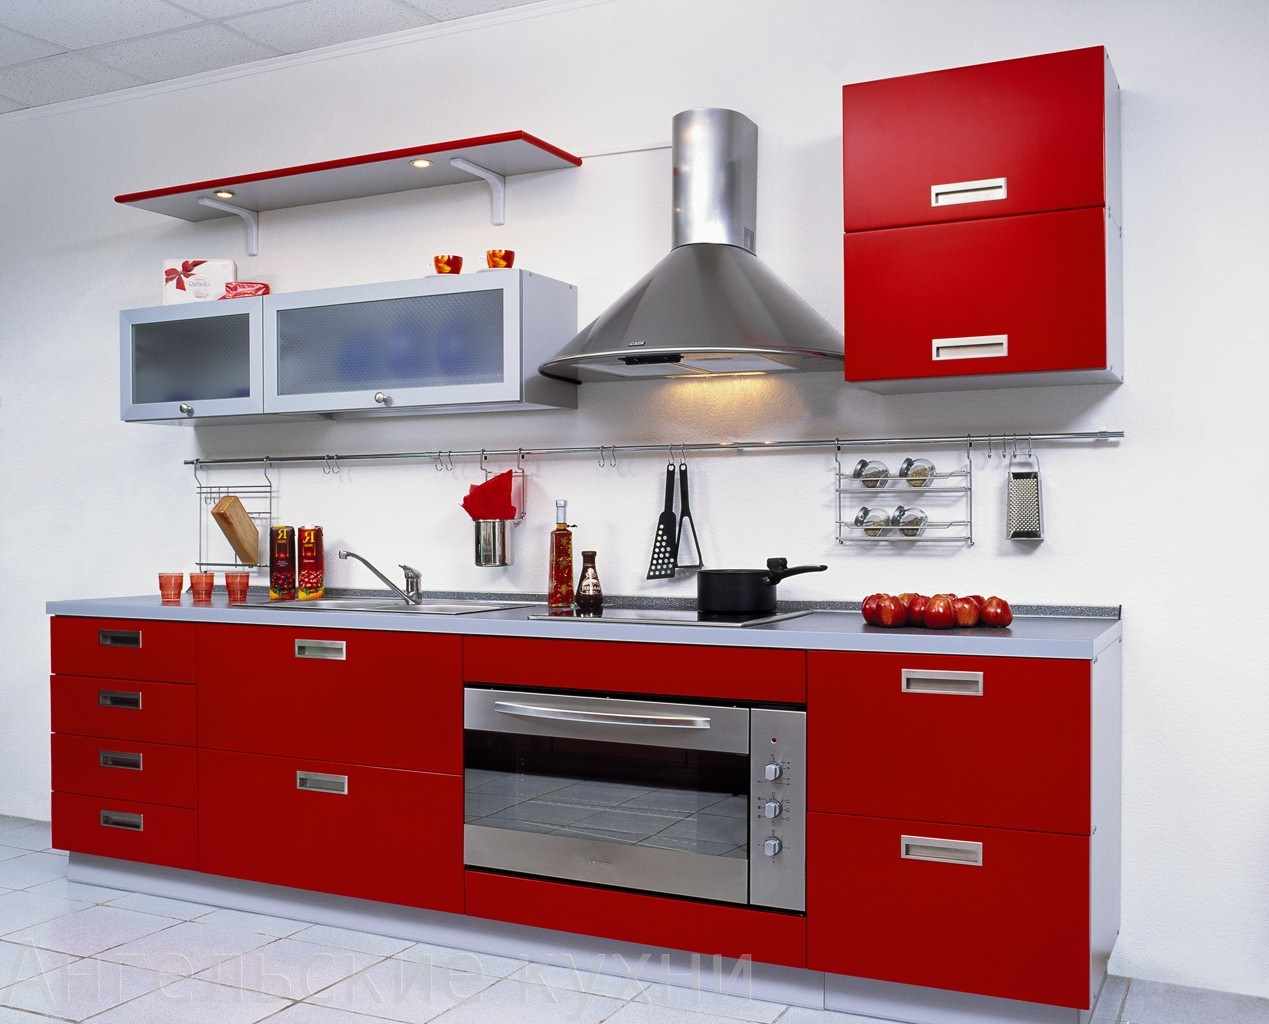 et eksempel på et usædvanligt design af et rødt køkken